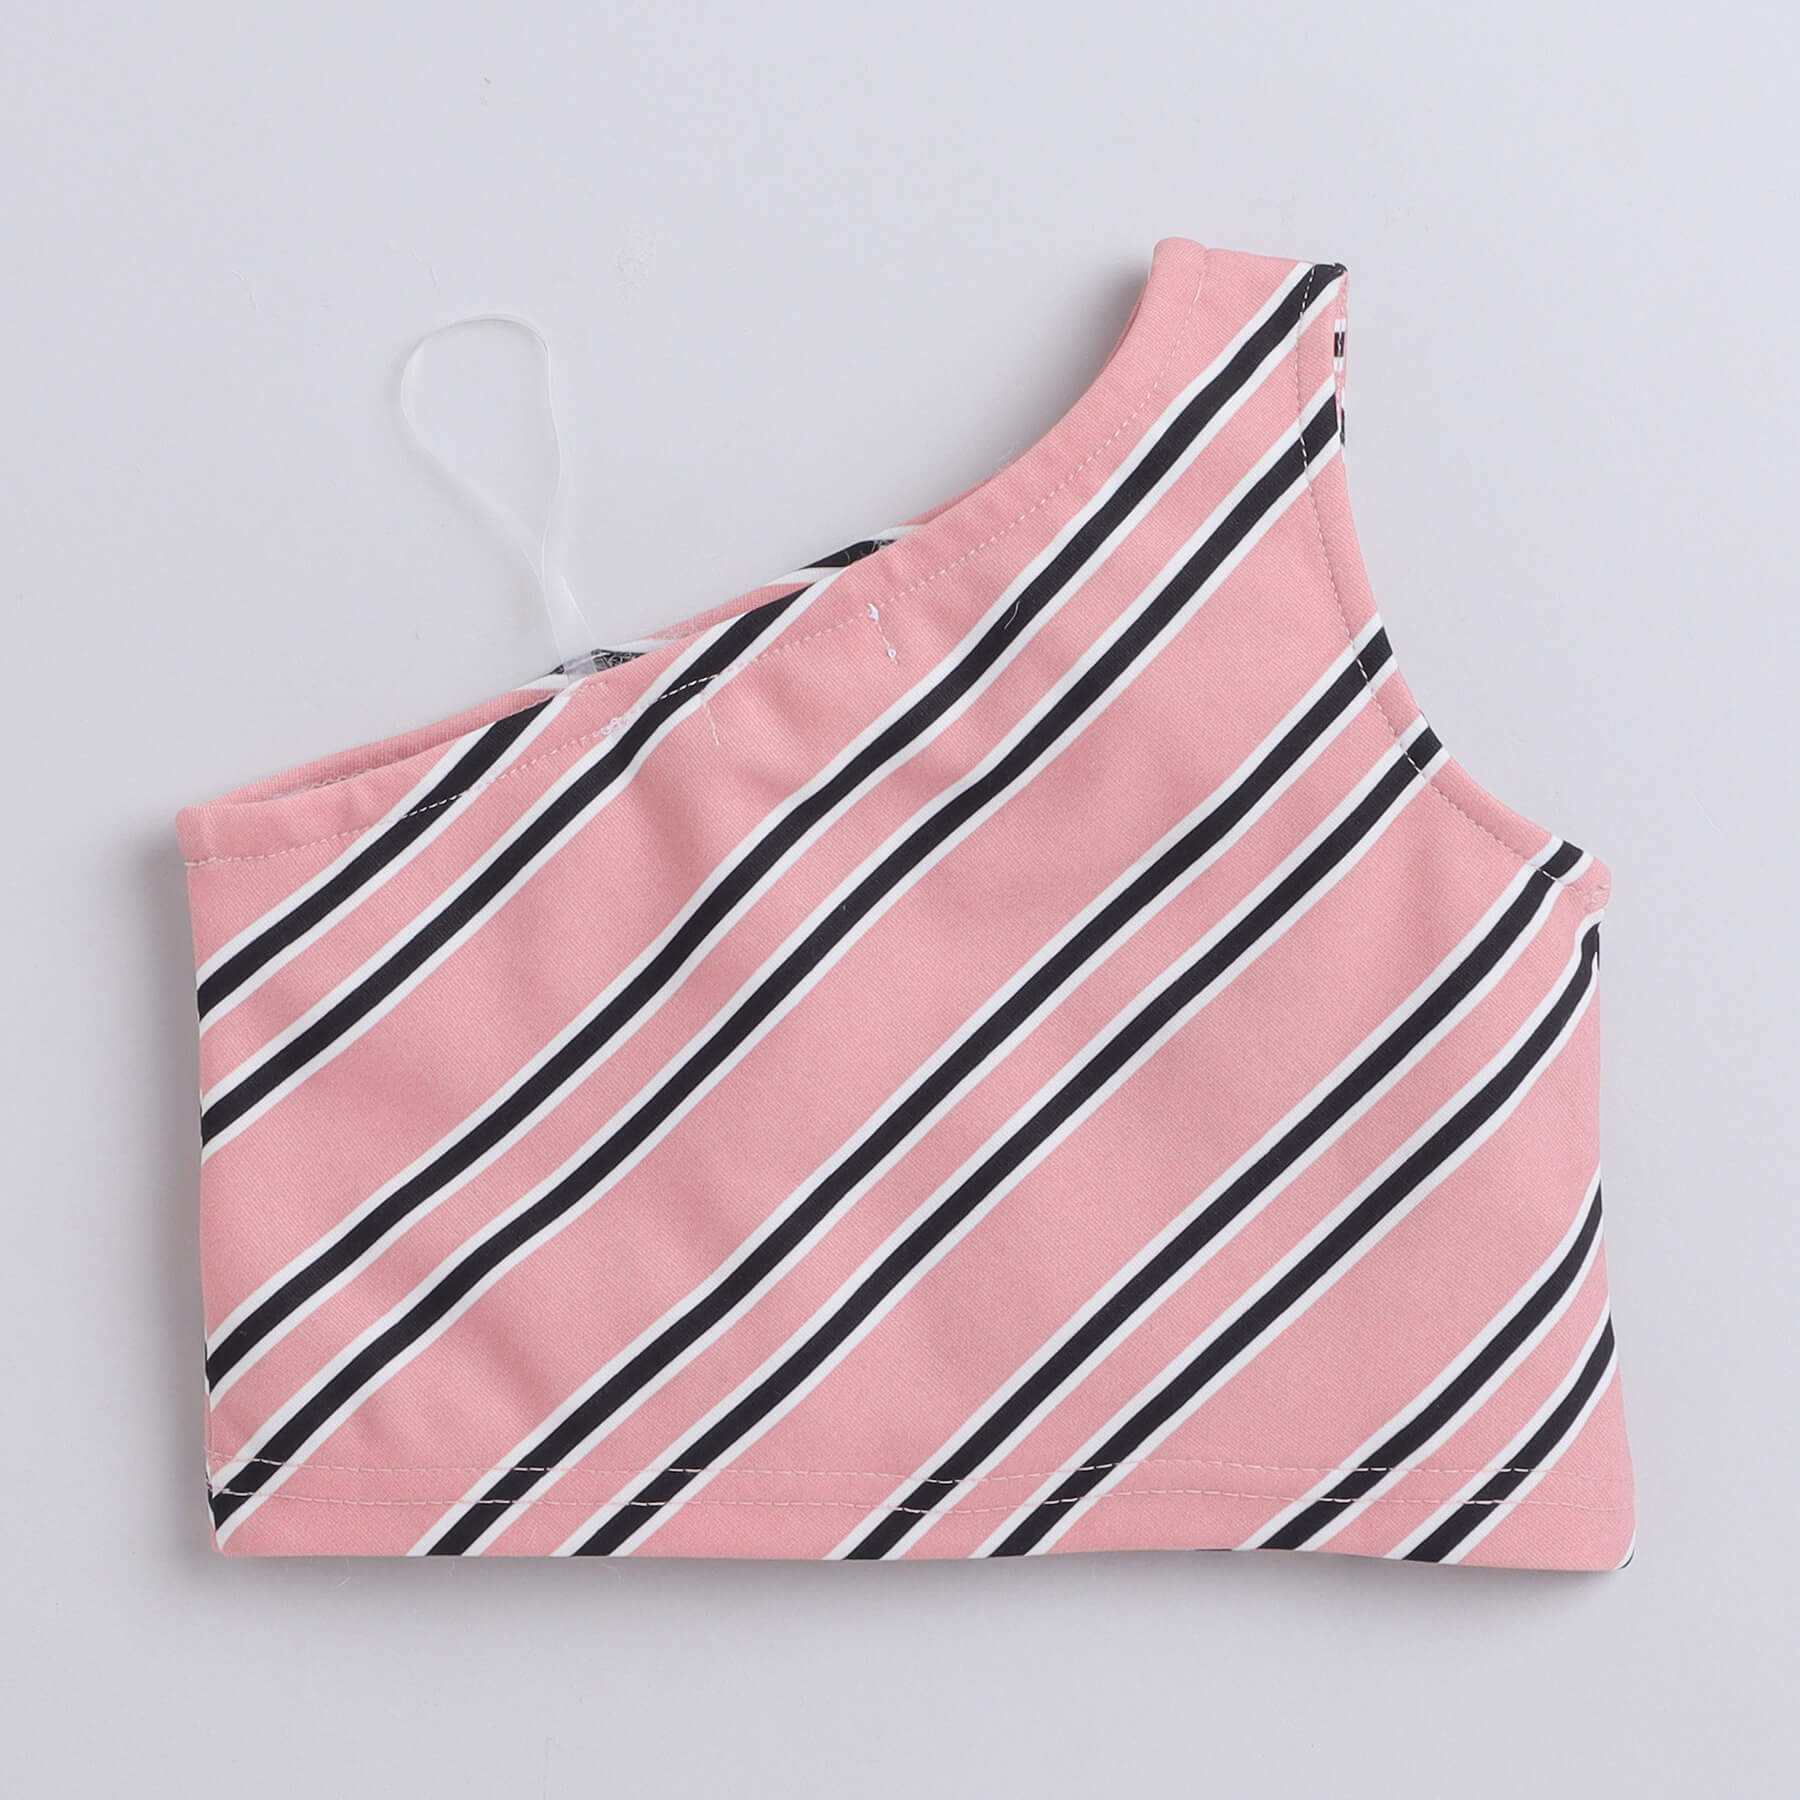 Taffykids stripes printed on shoulder crop top and skort set-Pink/Black